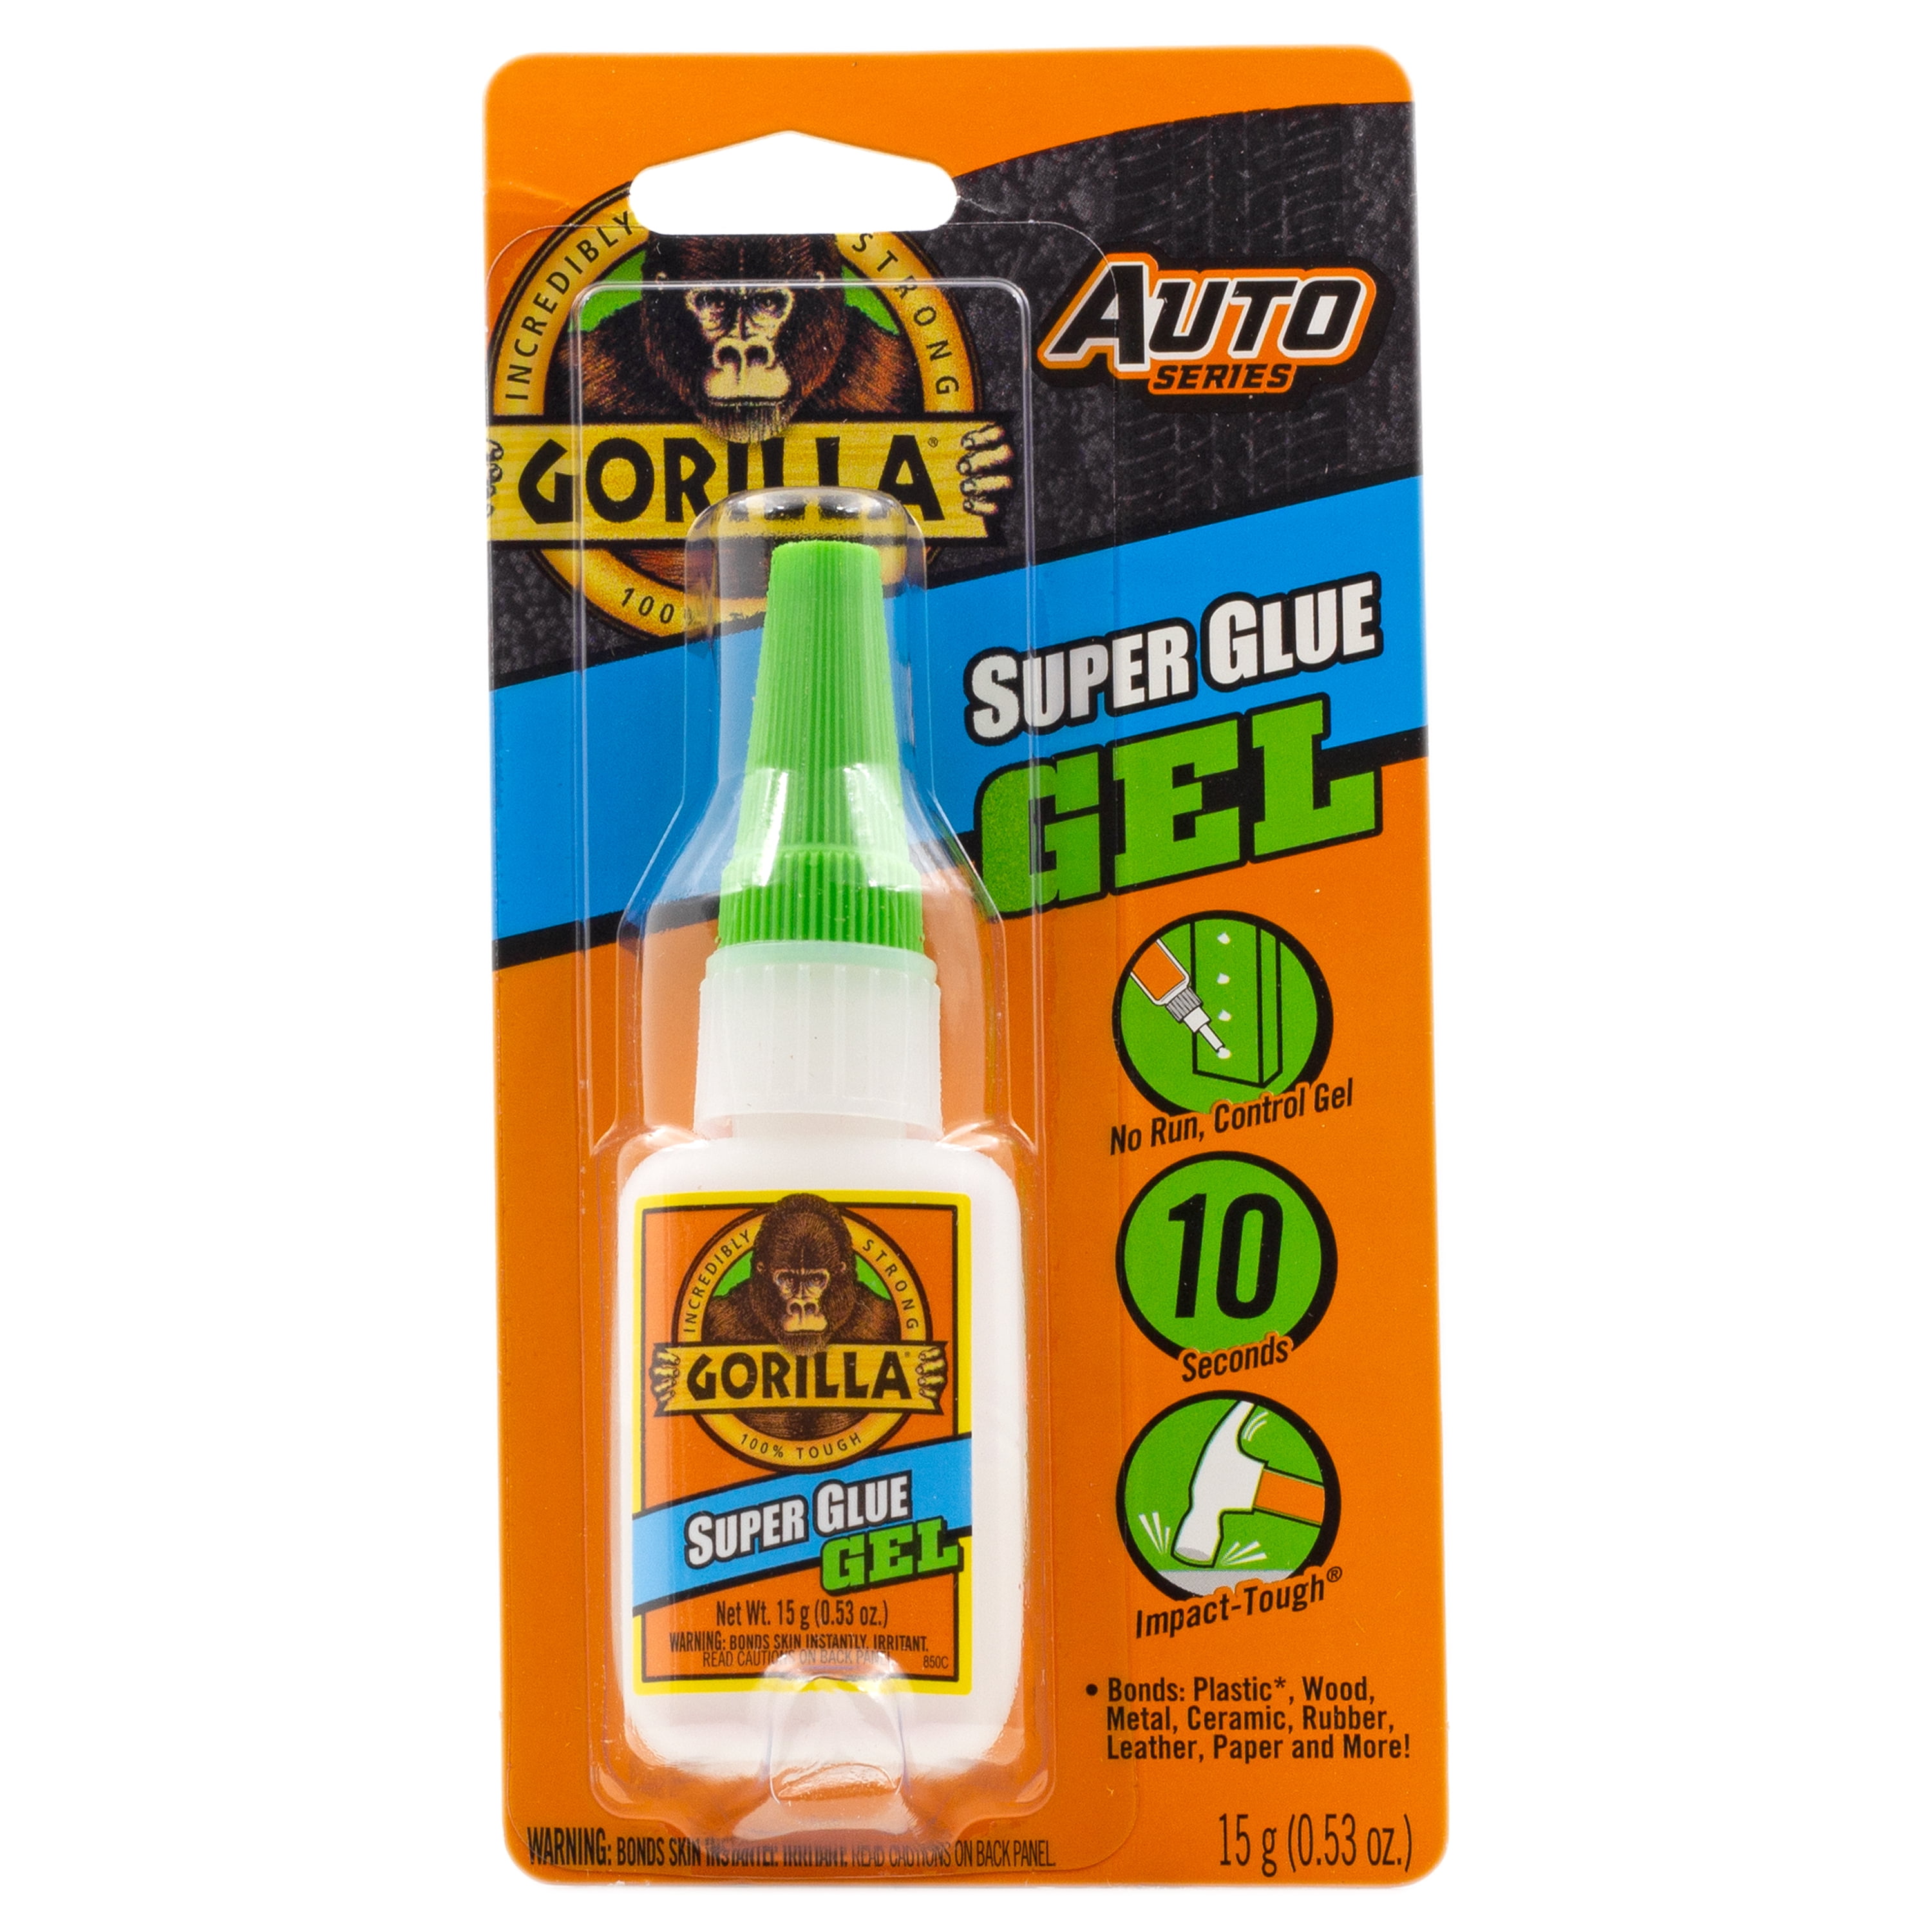 Gorilla Super Glue and Gorilla Glue Clear